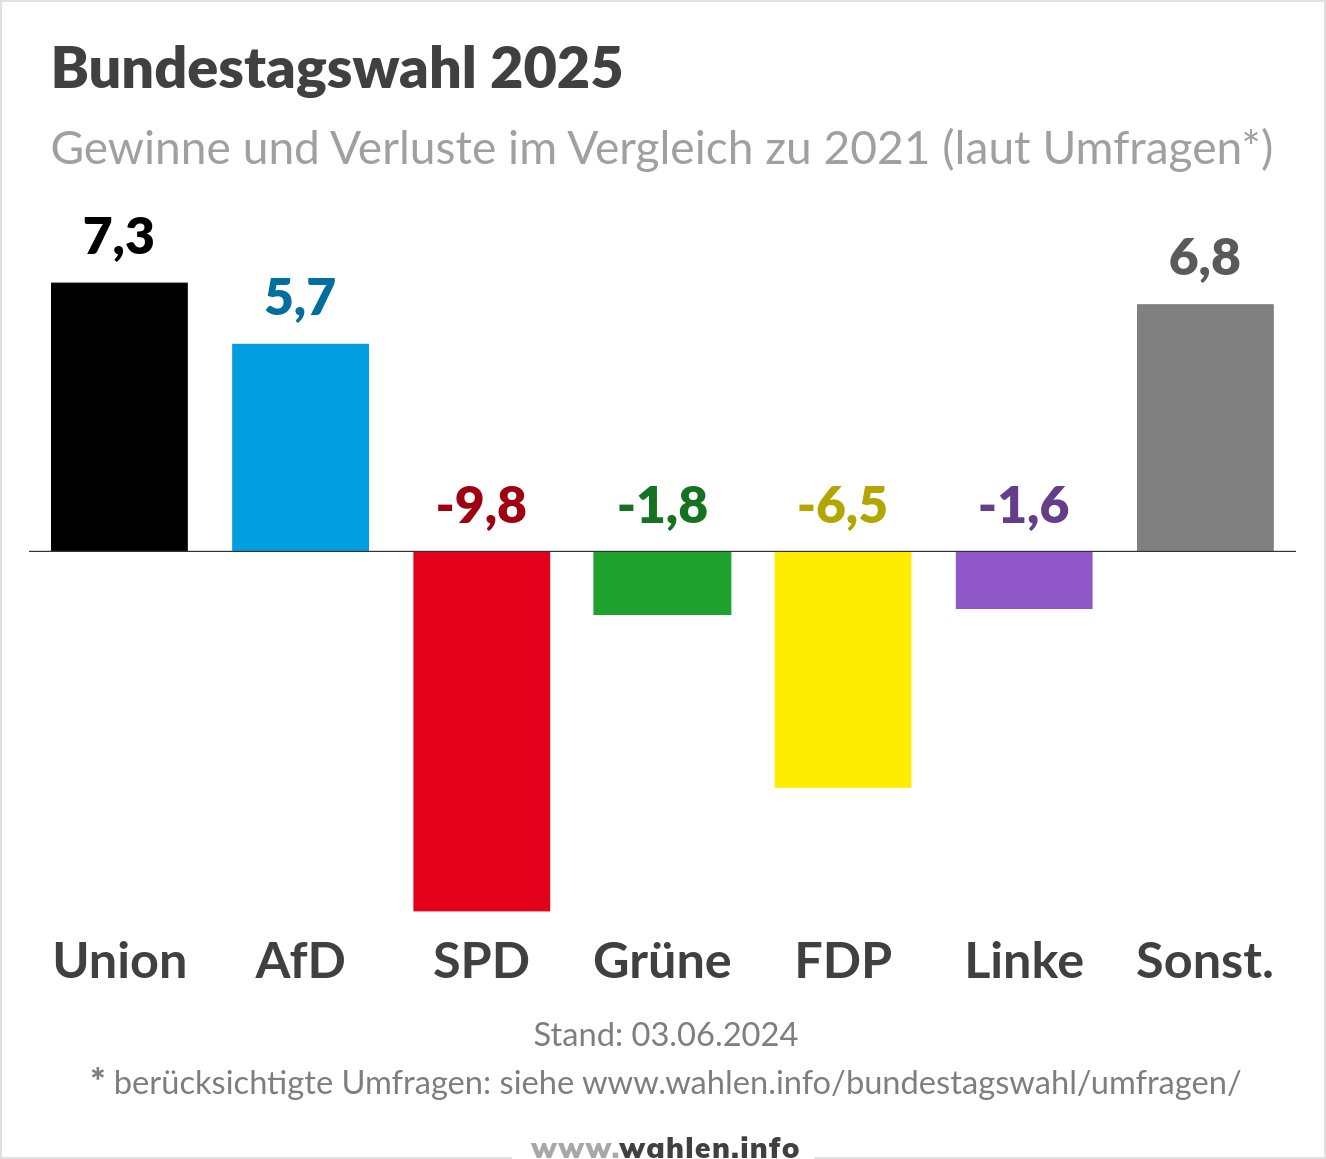 Bundestagswahl 2025 - Umfragen (Gewinne und Verluste)